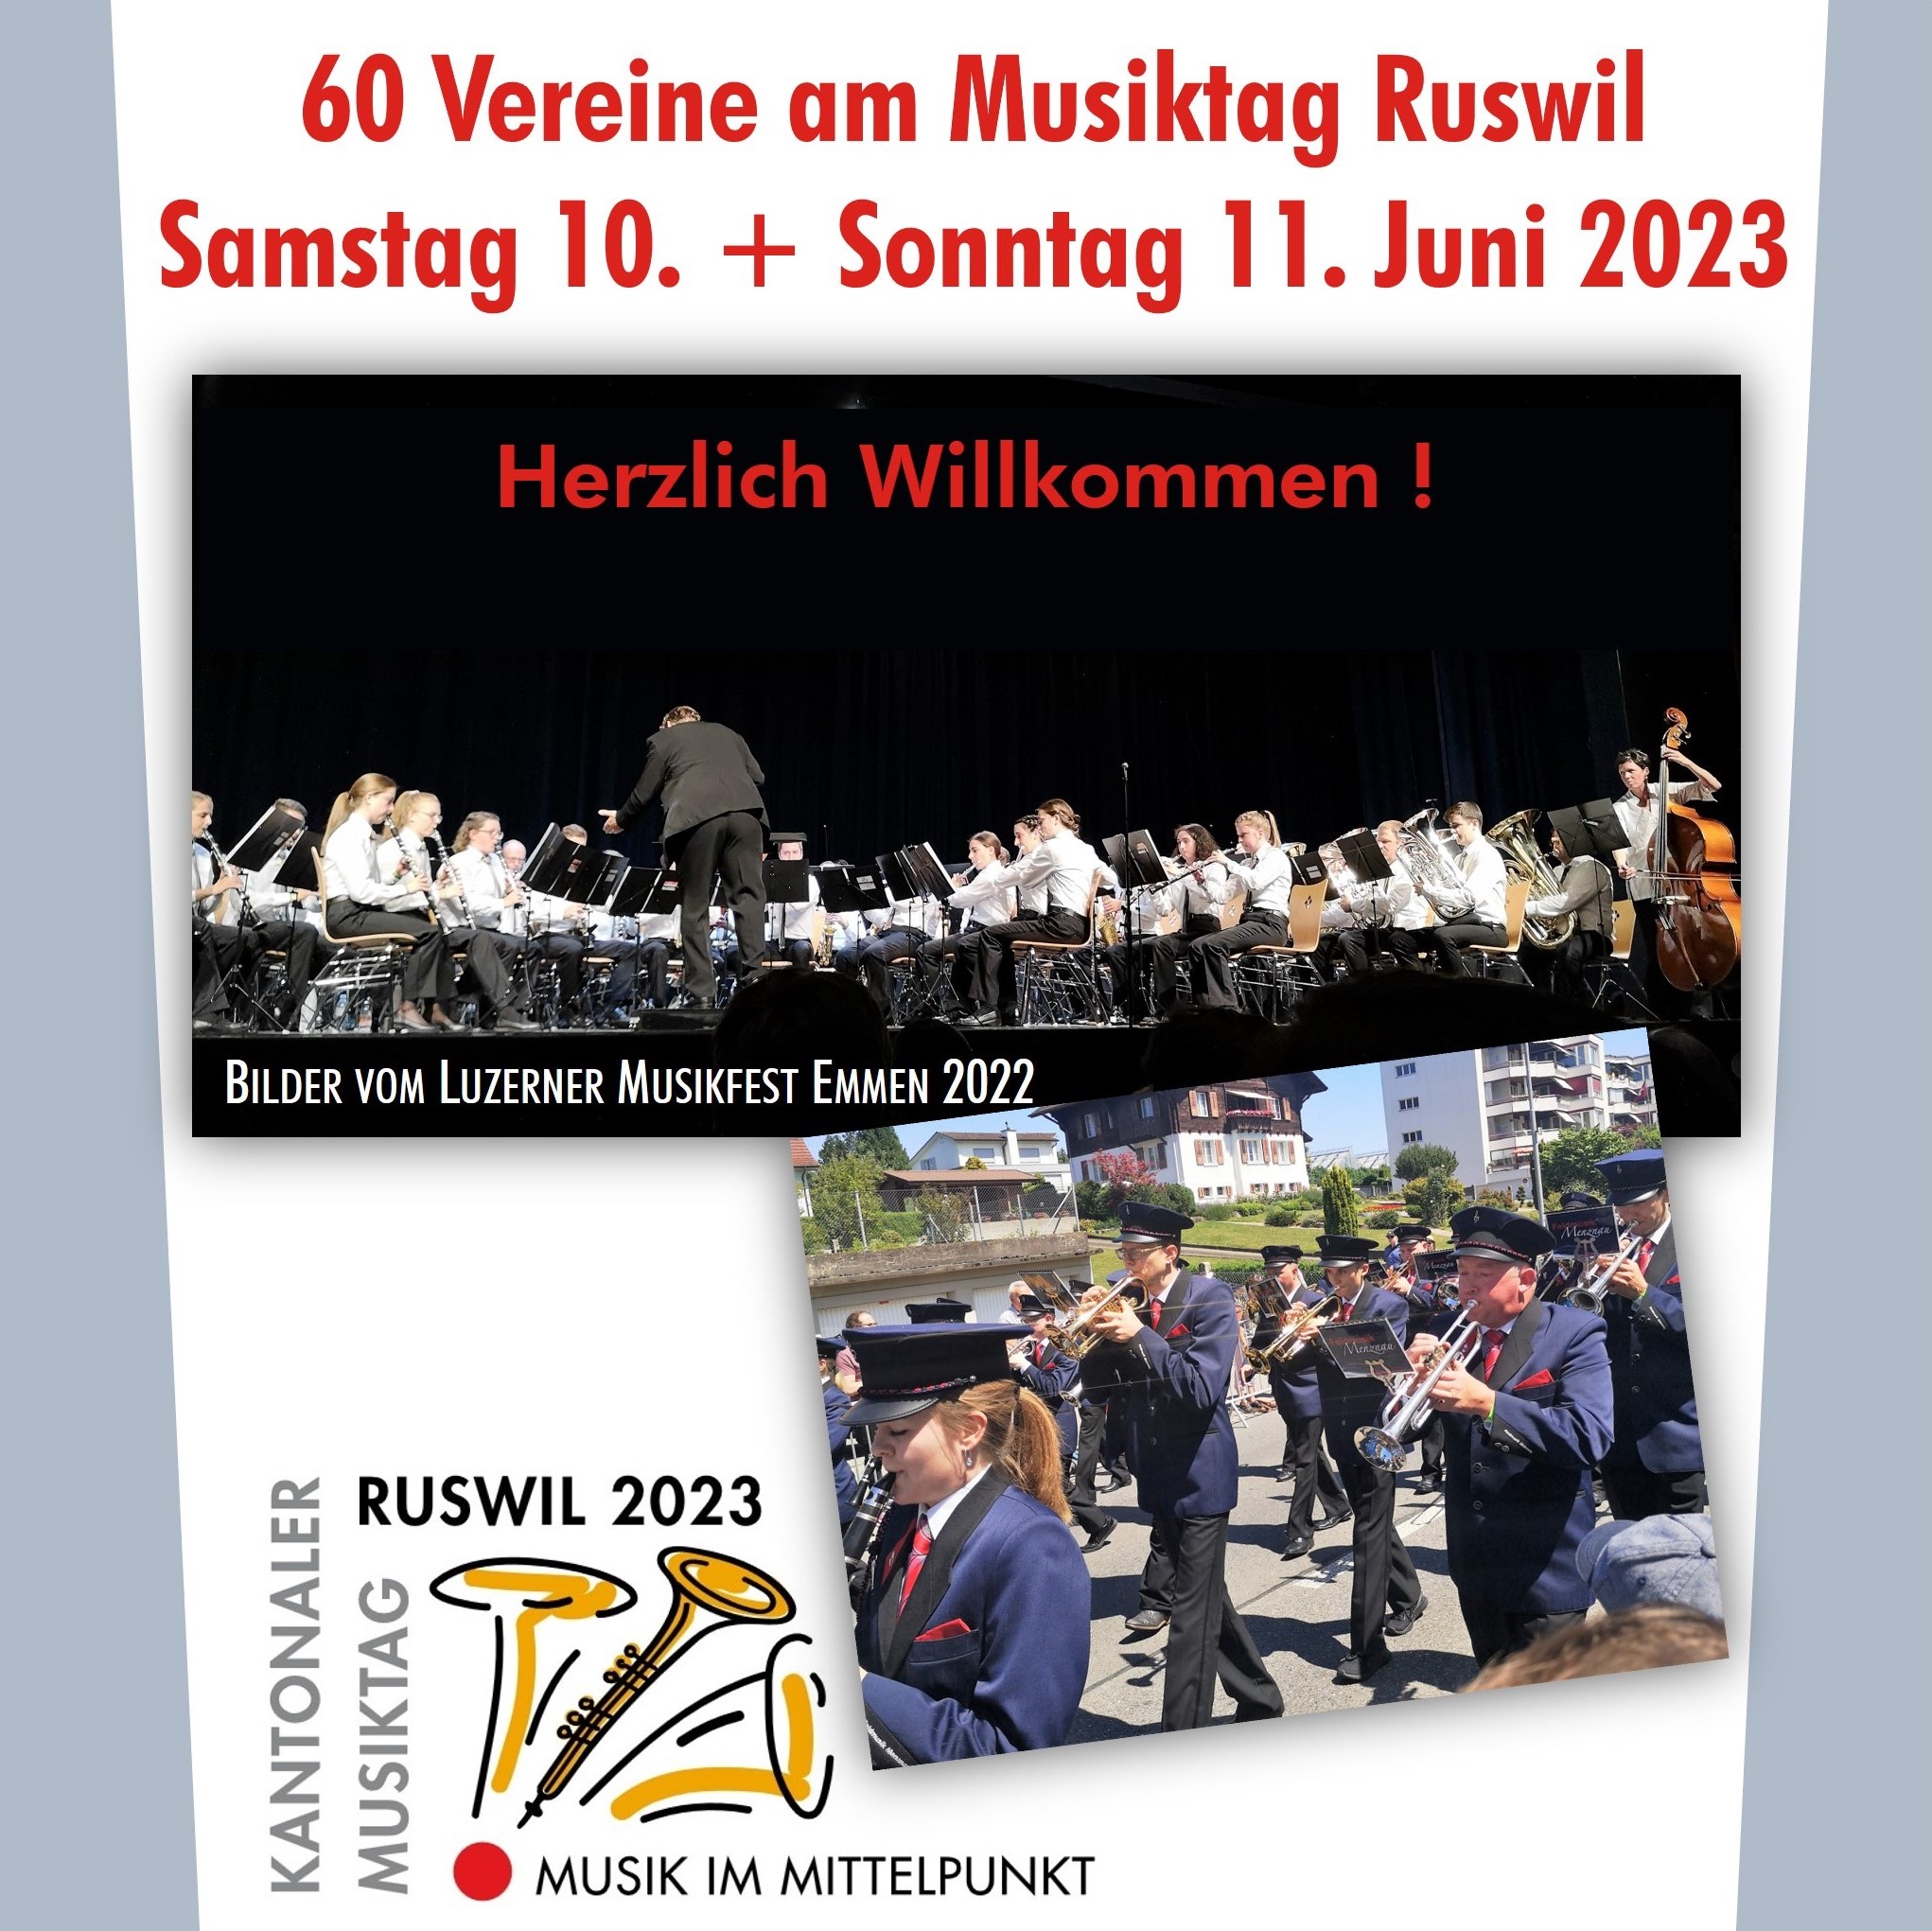 Programm Musiktag vom 10. / 11. Juni 2023 sowie Teilnehmer Musiktag Ruswil 2023